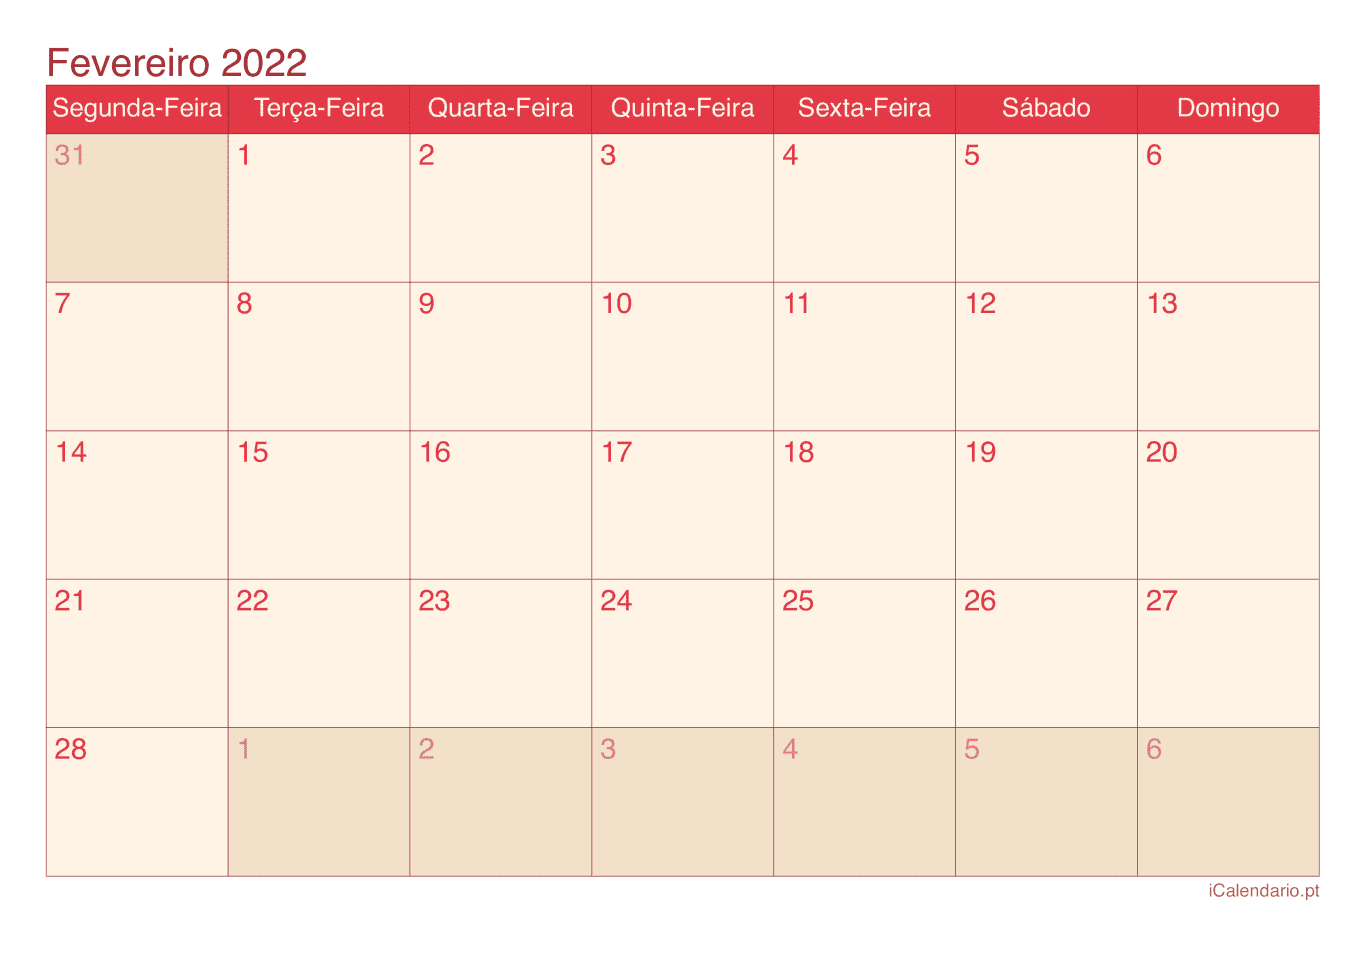 Calendário de fevereiro 2022 - Cherry